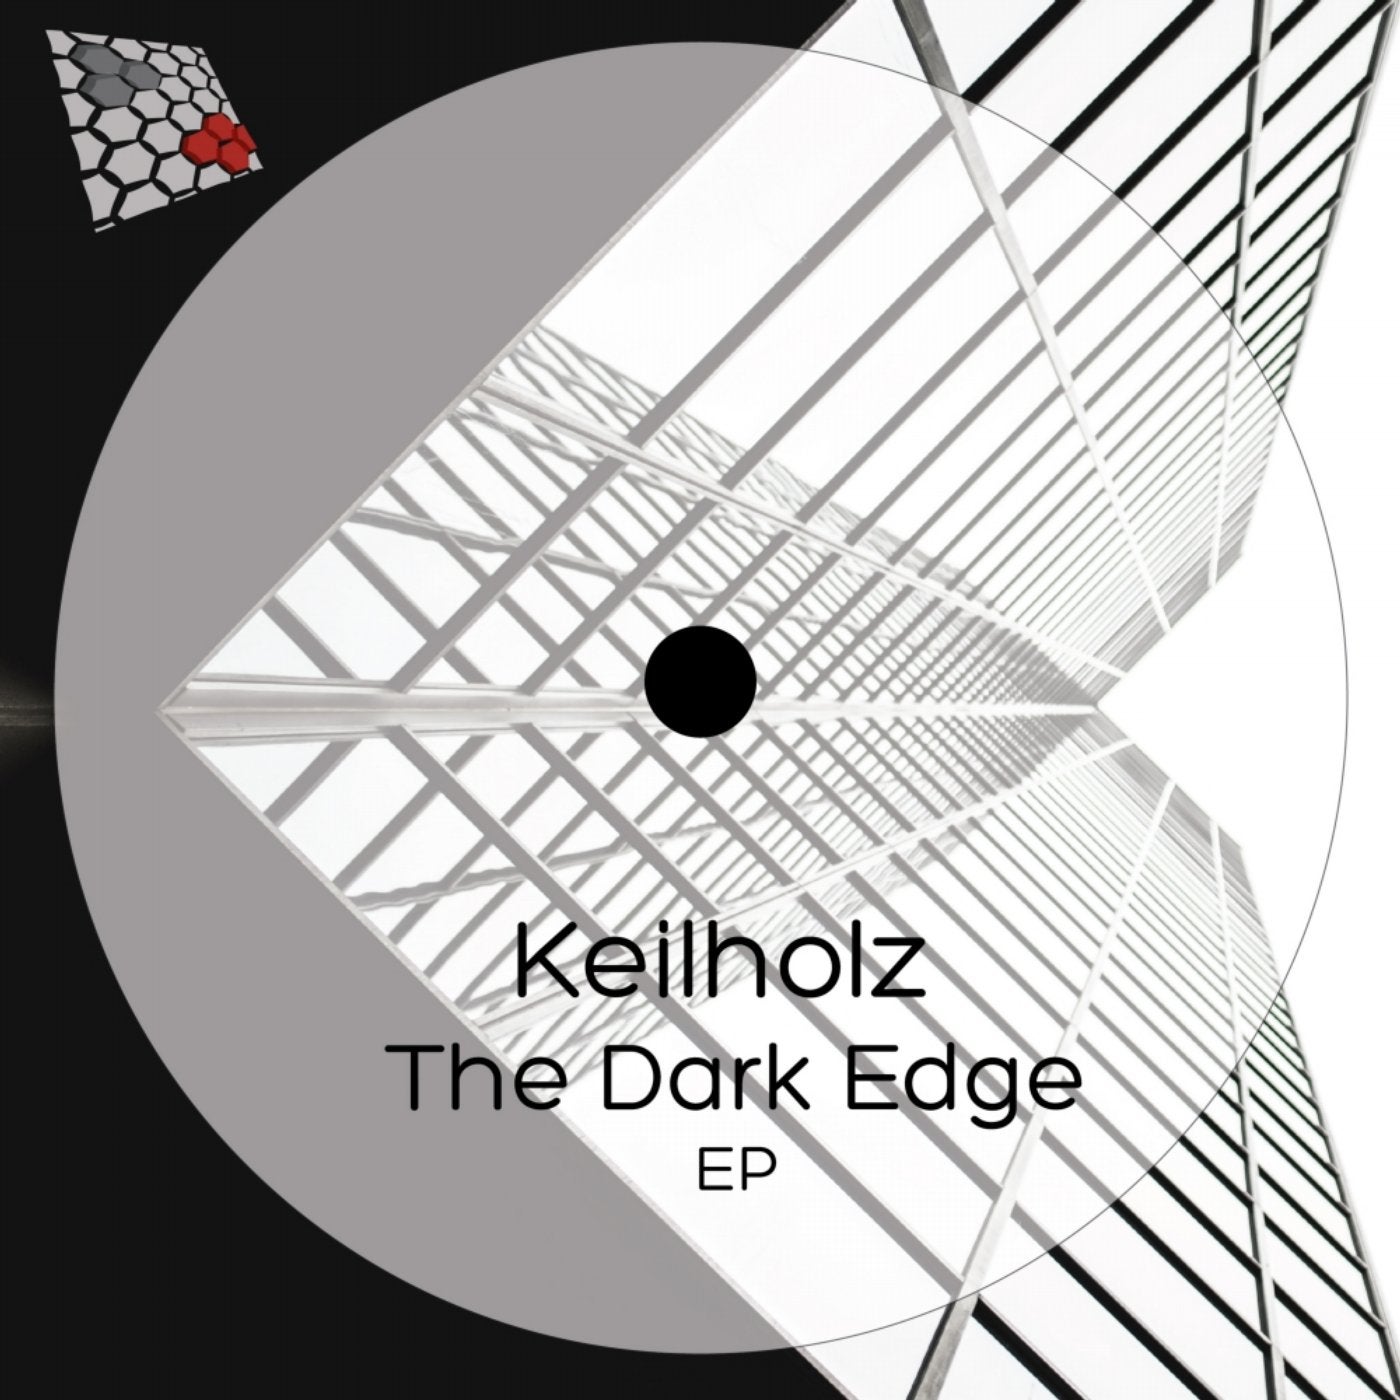 The Dark Edge EP